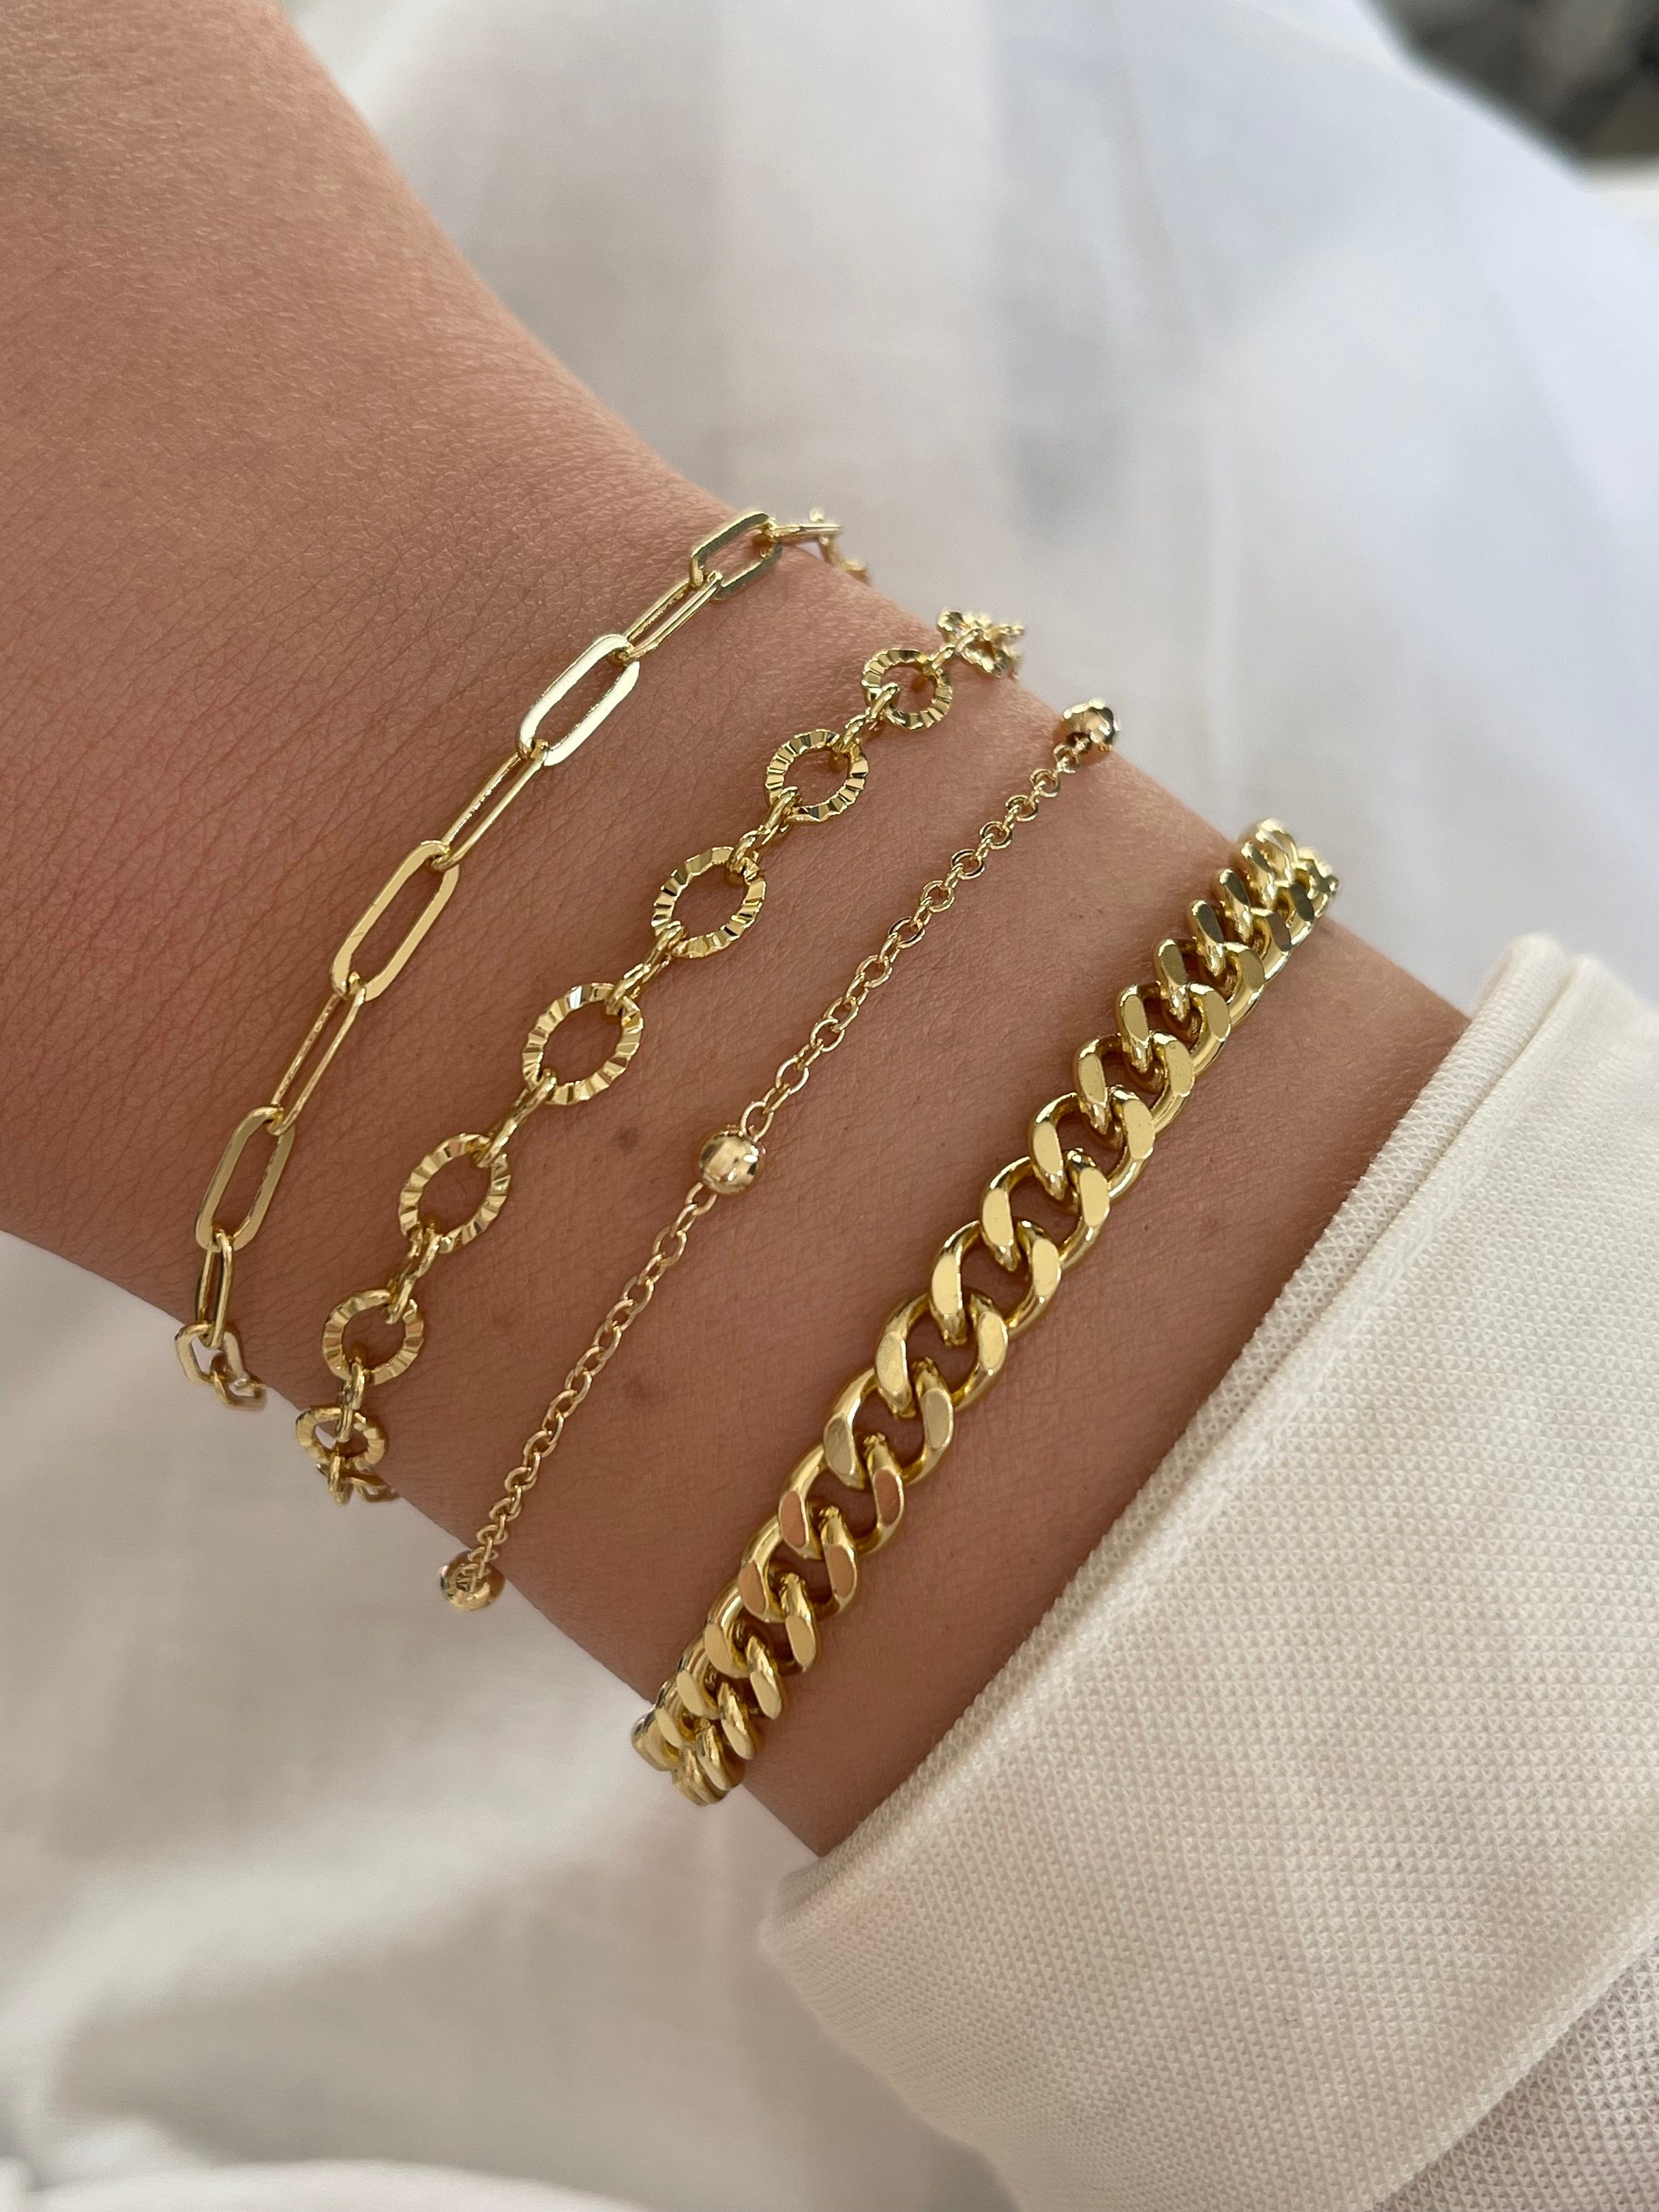 Gold Ladies Bracelet Design - YouTube-baongoctrading.com.vn